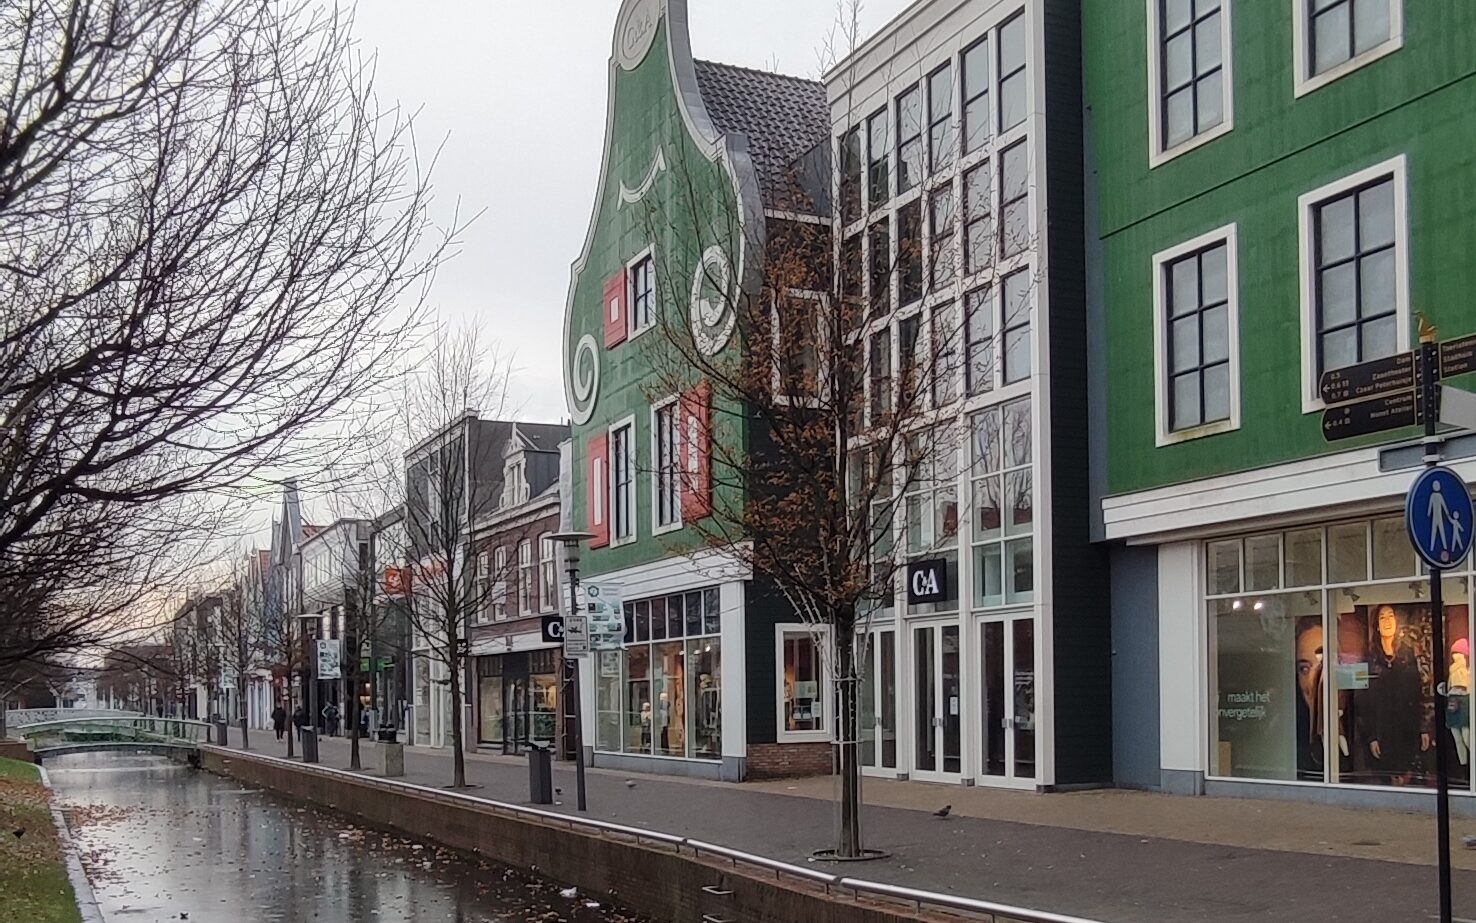 Cosa vedere a Zaandam case colorate e negozi sul fiume